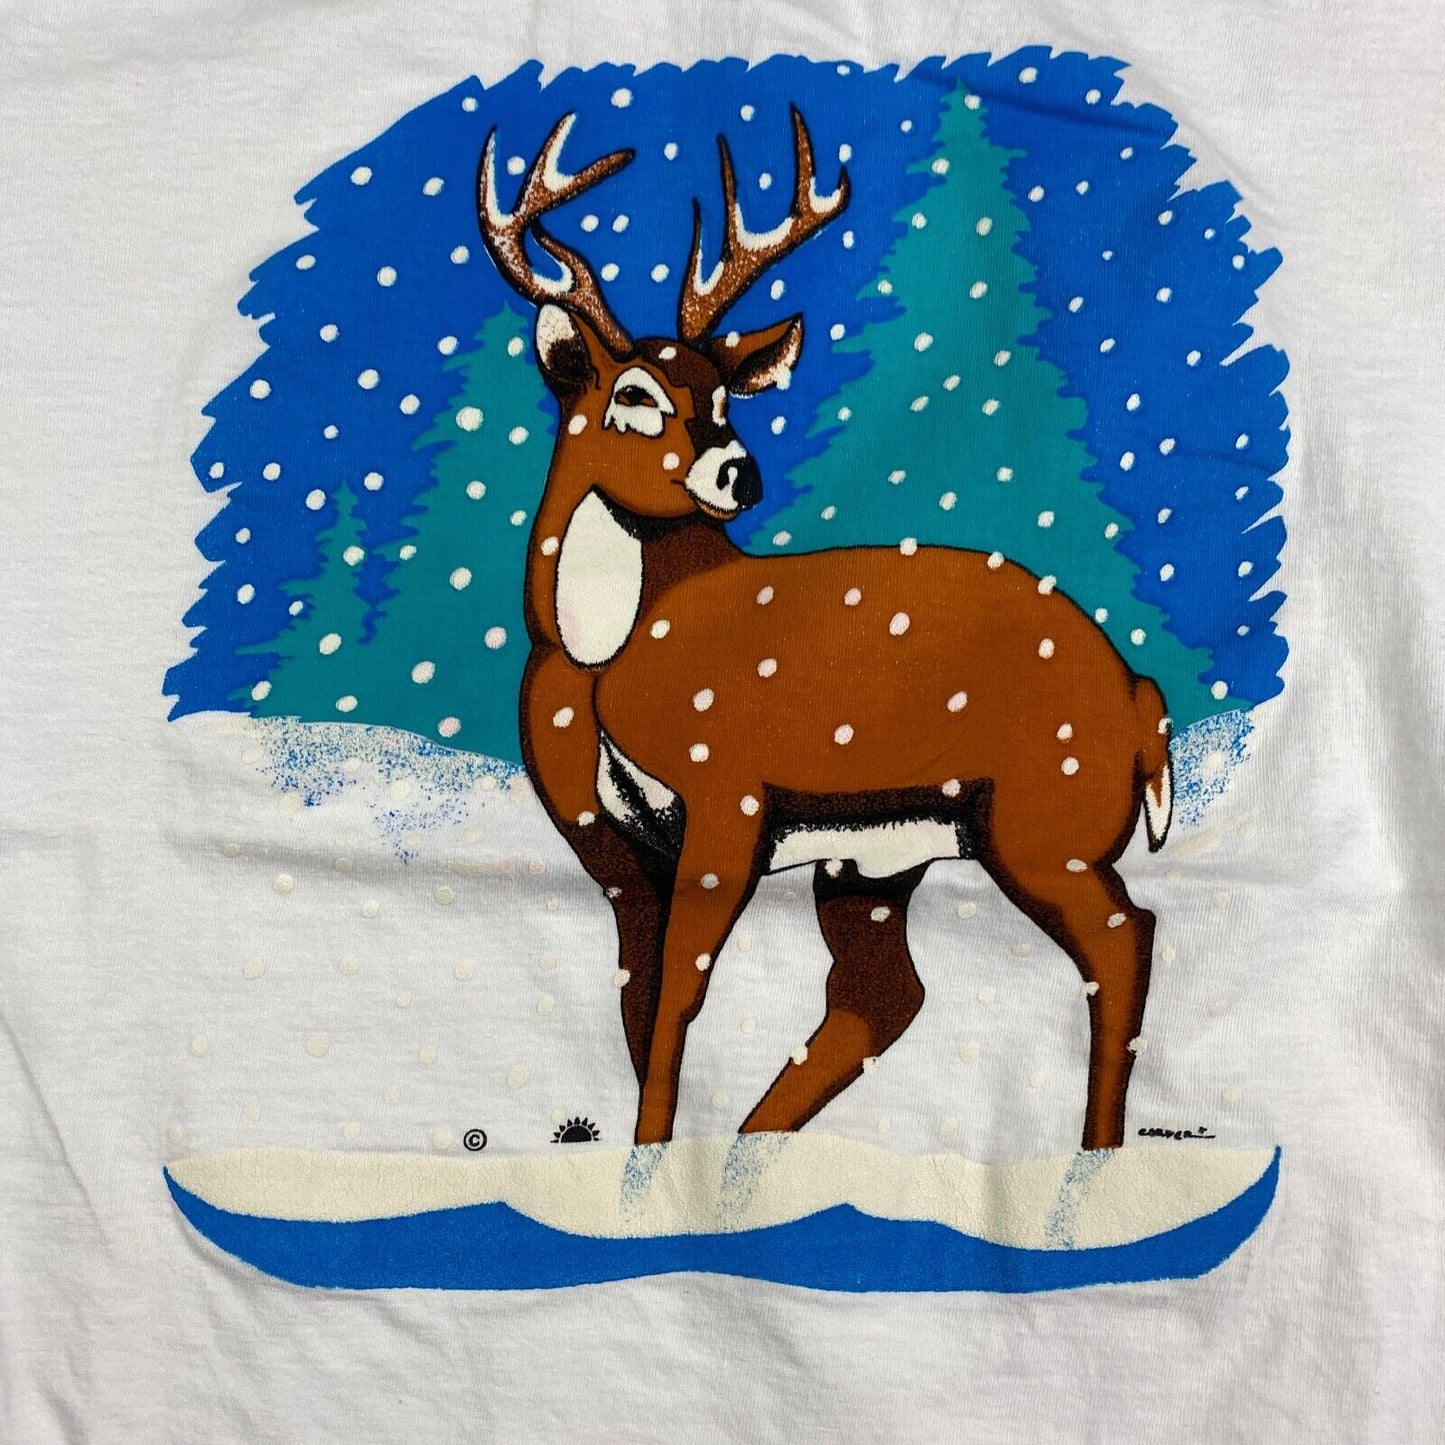 VINTAGE 90s Illustrated Winter Deer Nature White T-Shirt sz Large Men Adult